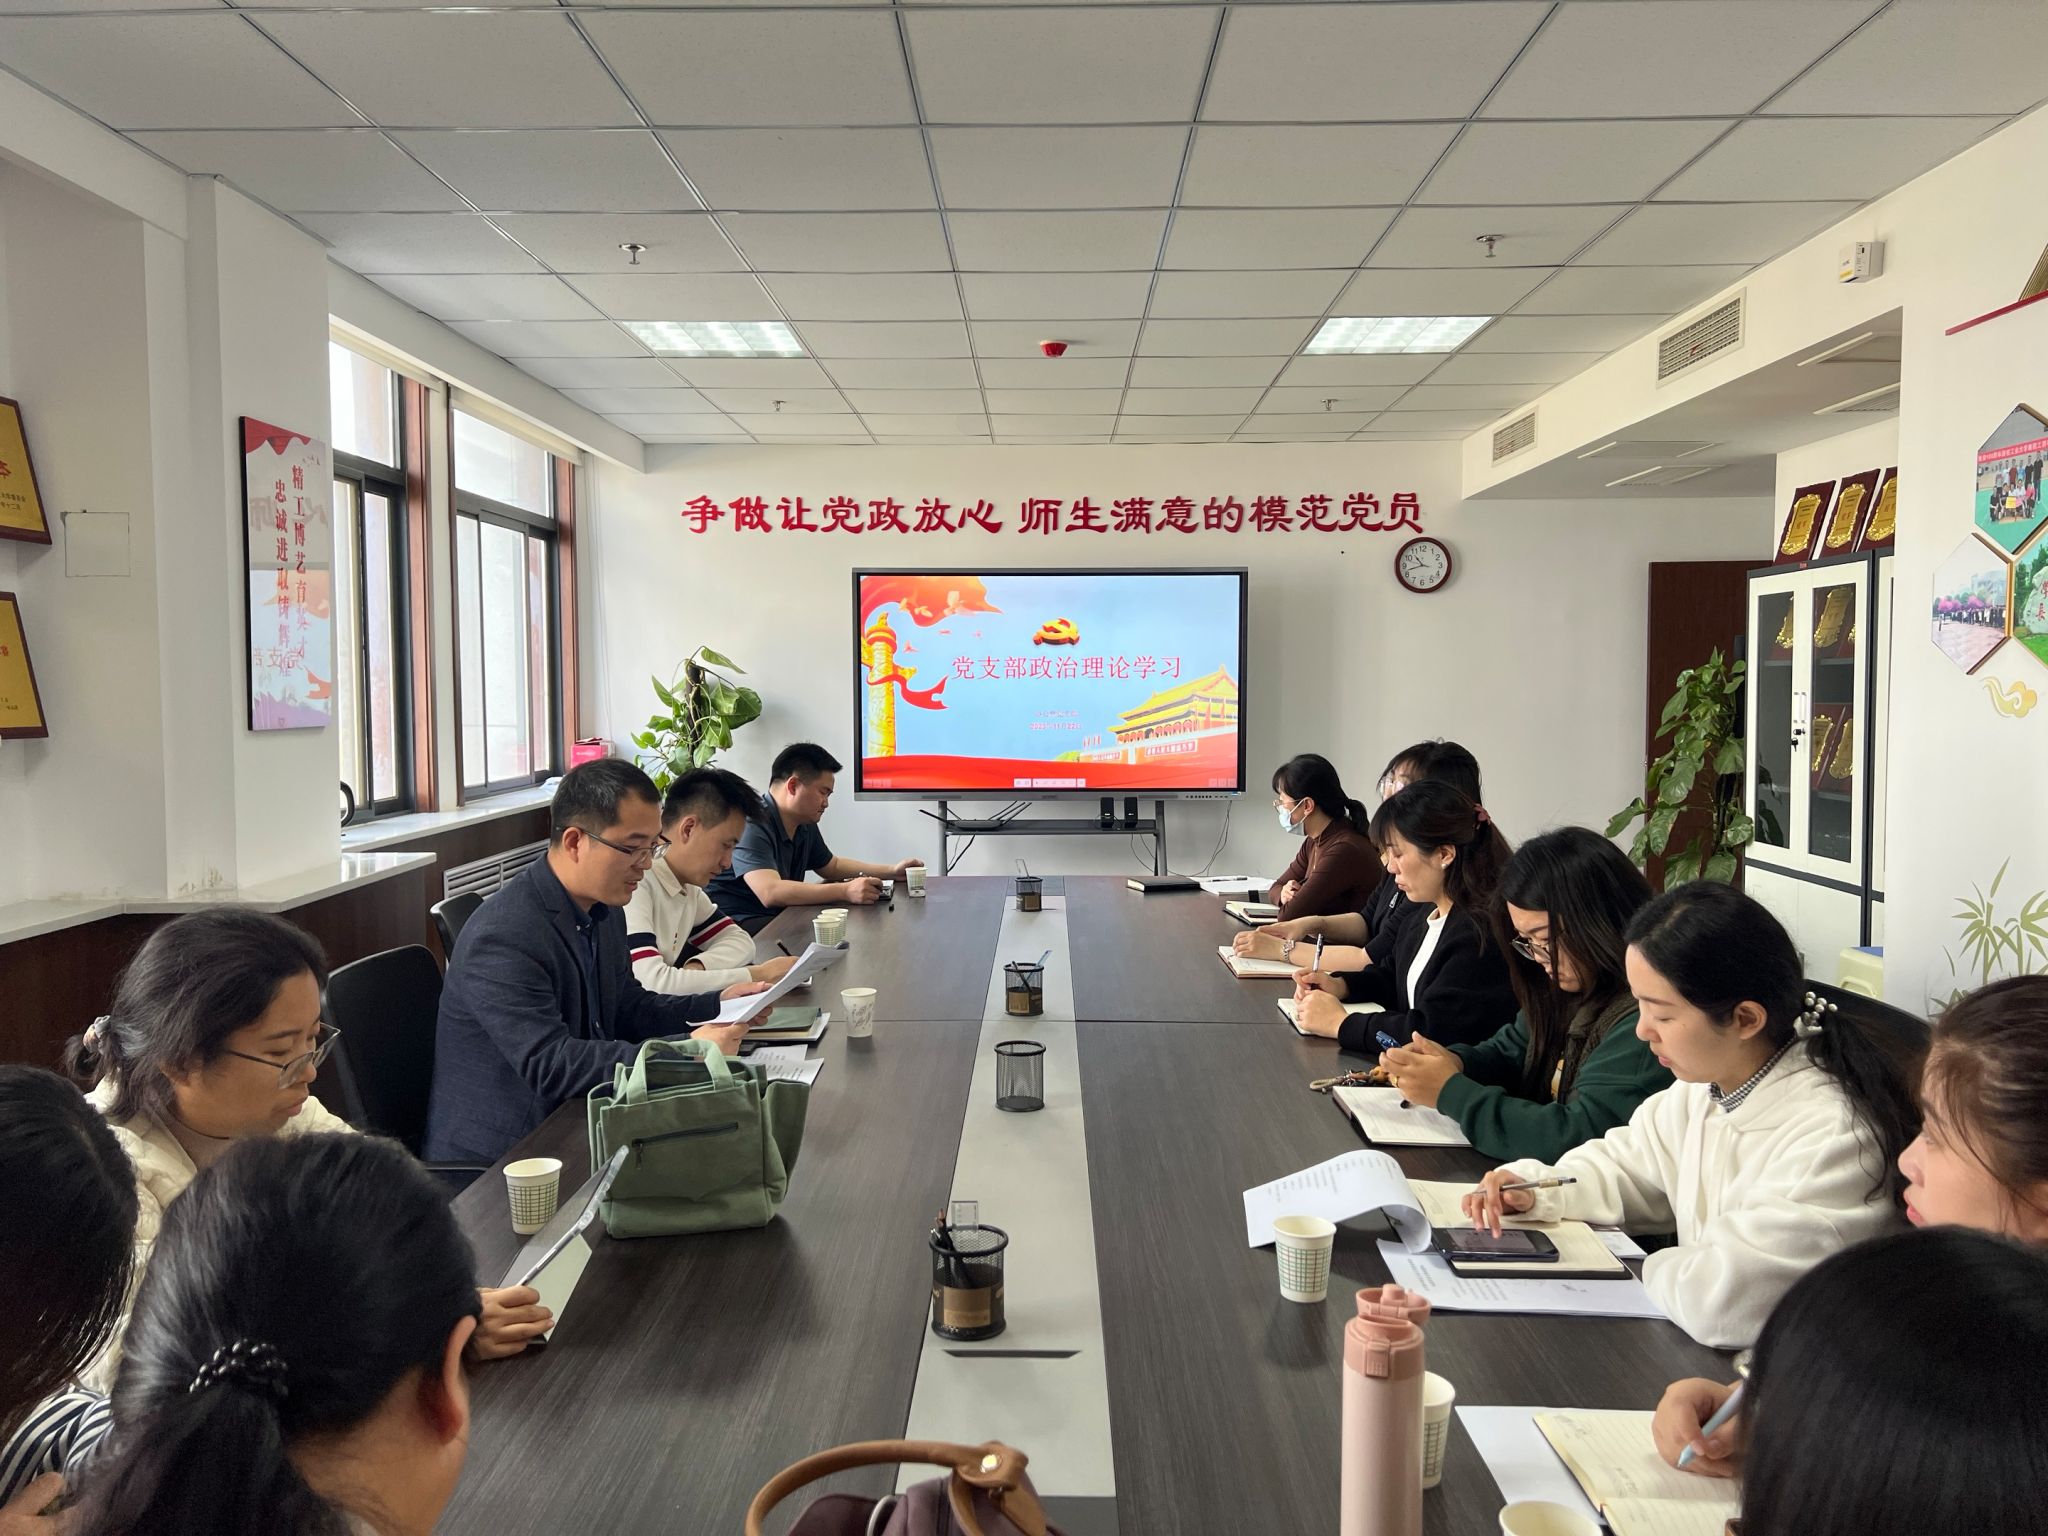 beat365中国在线体育办公室党支部联合护航工作室开展法律知识交流活动